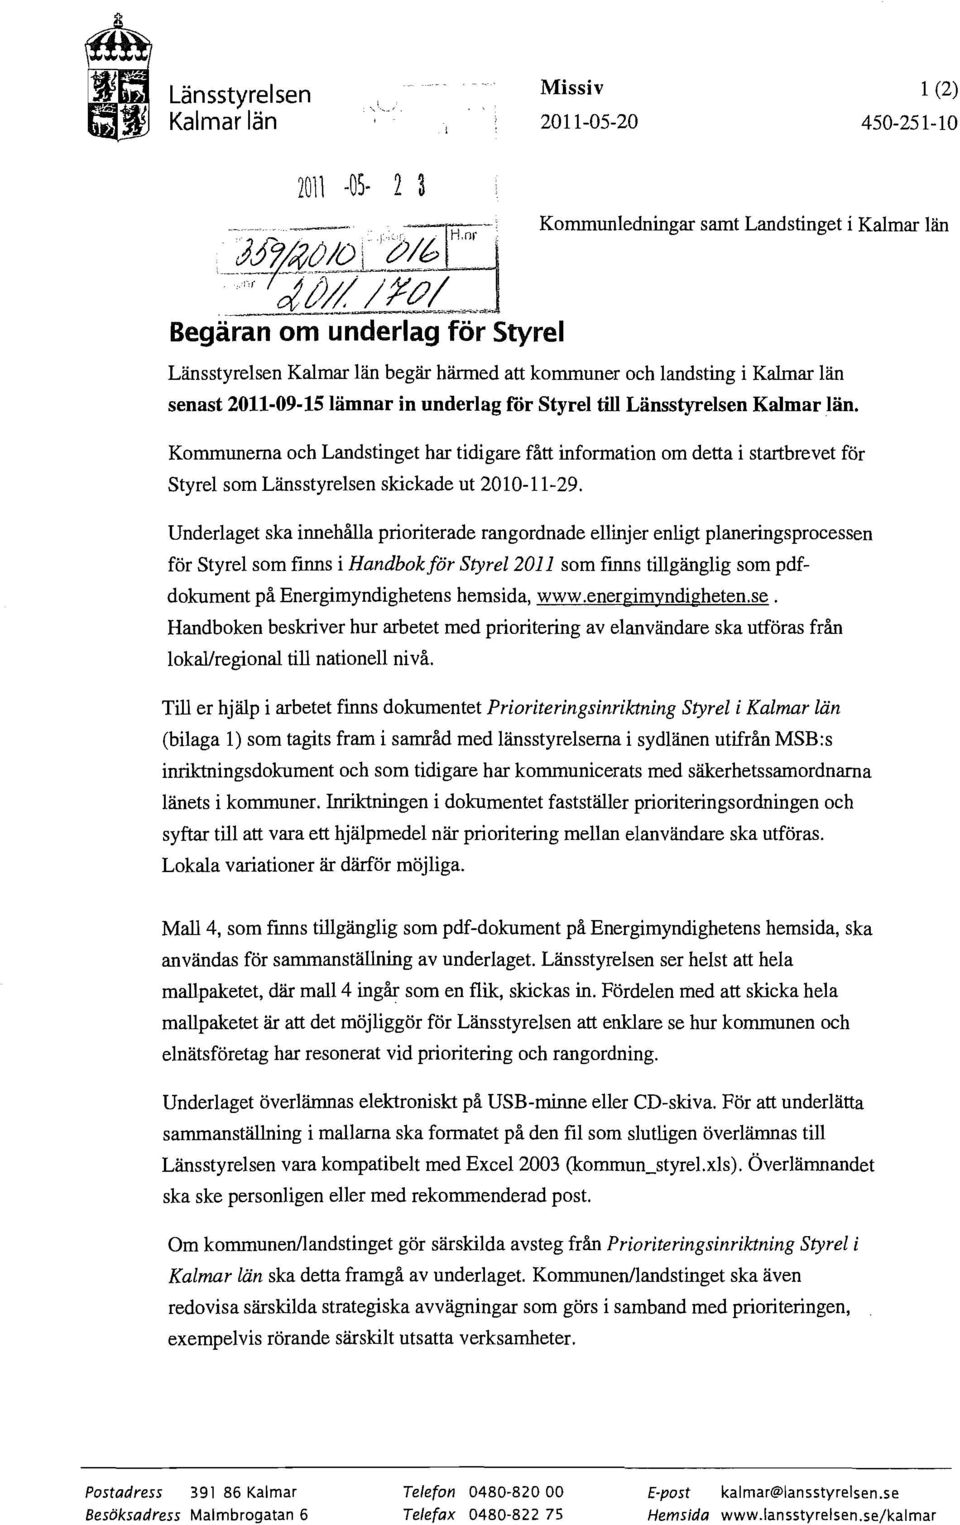 2011-09-1Slämnar in underlag for Styrel till Läusstyrelsen Kalmar län. Kmmunerna h Landstinget har tidigare fått infrmatin m detta i startbrevet för Styrel sm Länsstyrelsen skikade ut 2010-11-29.